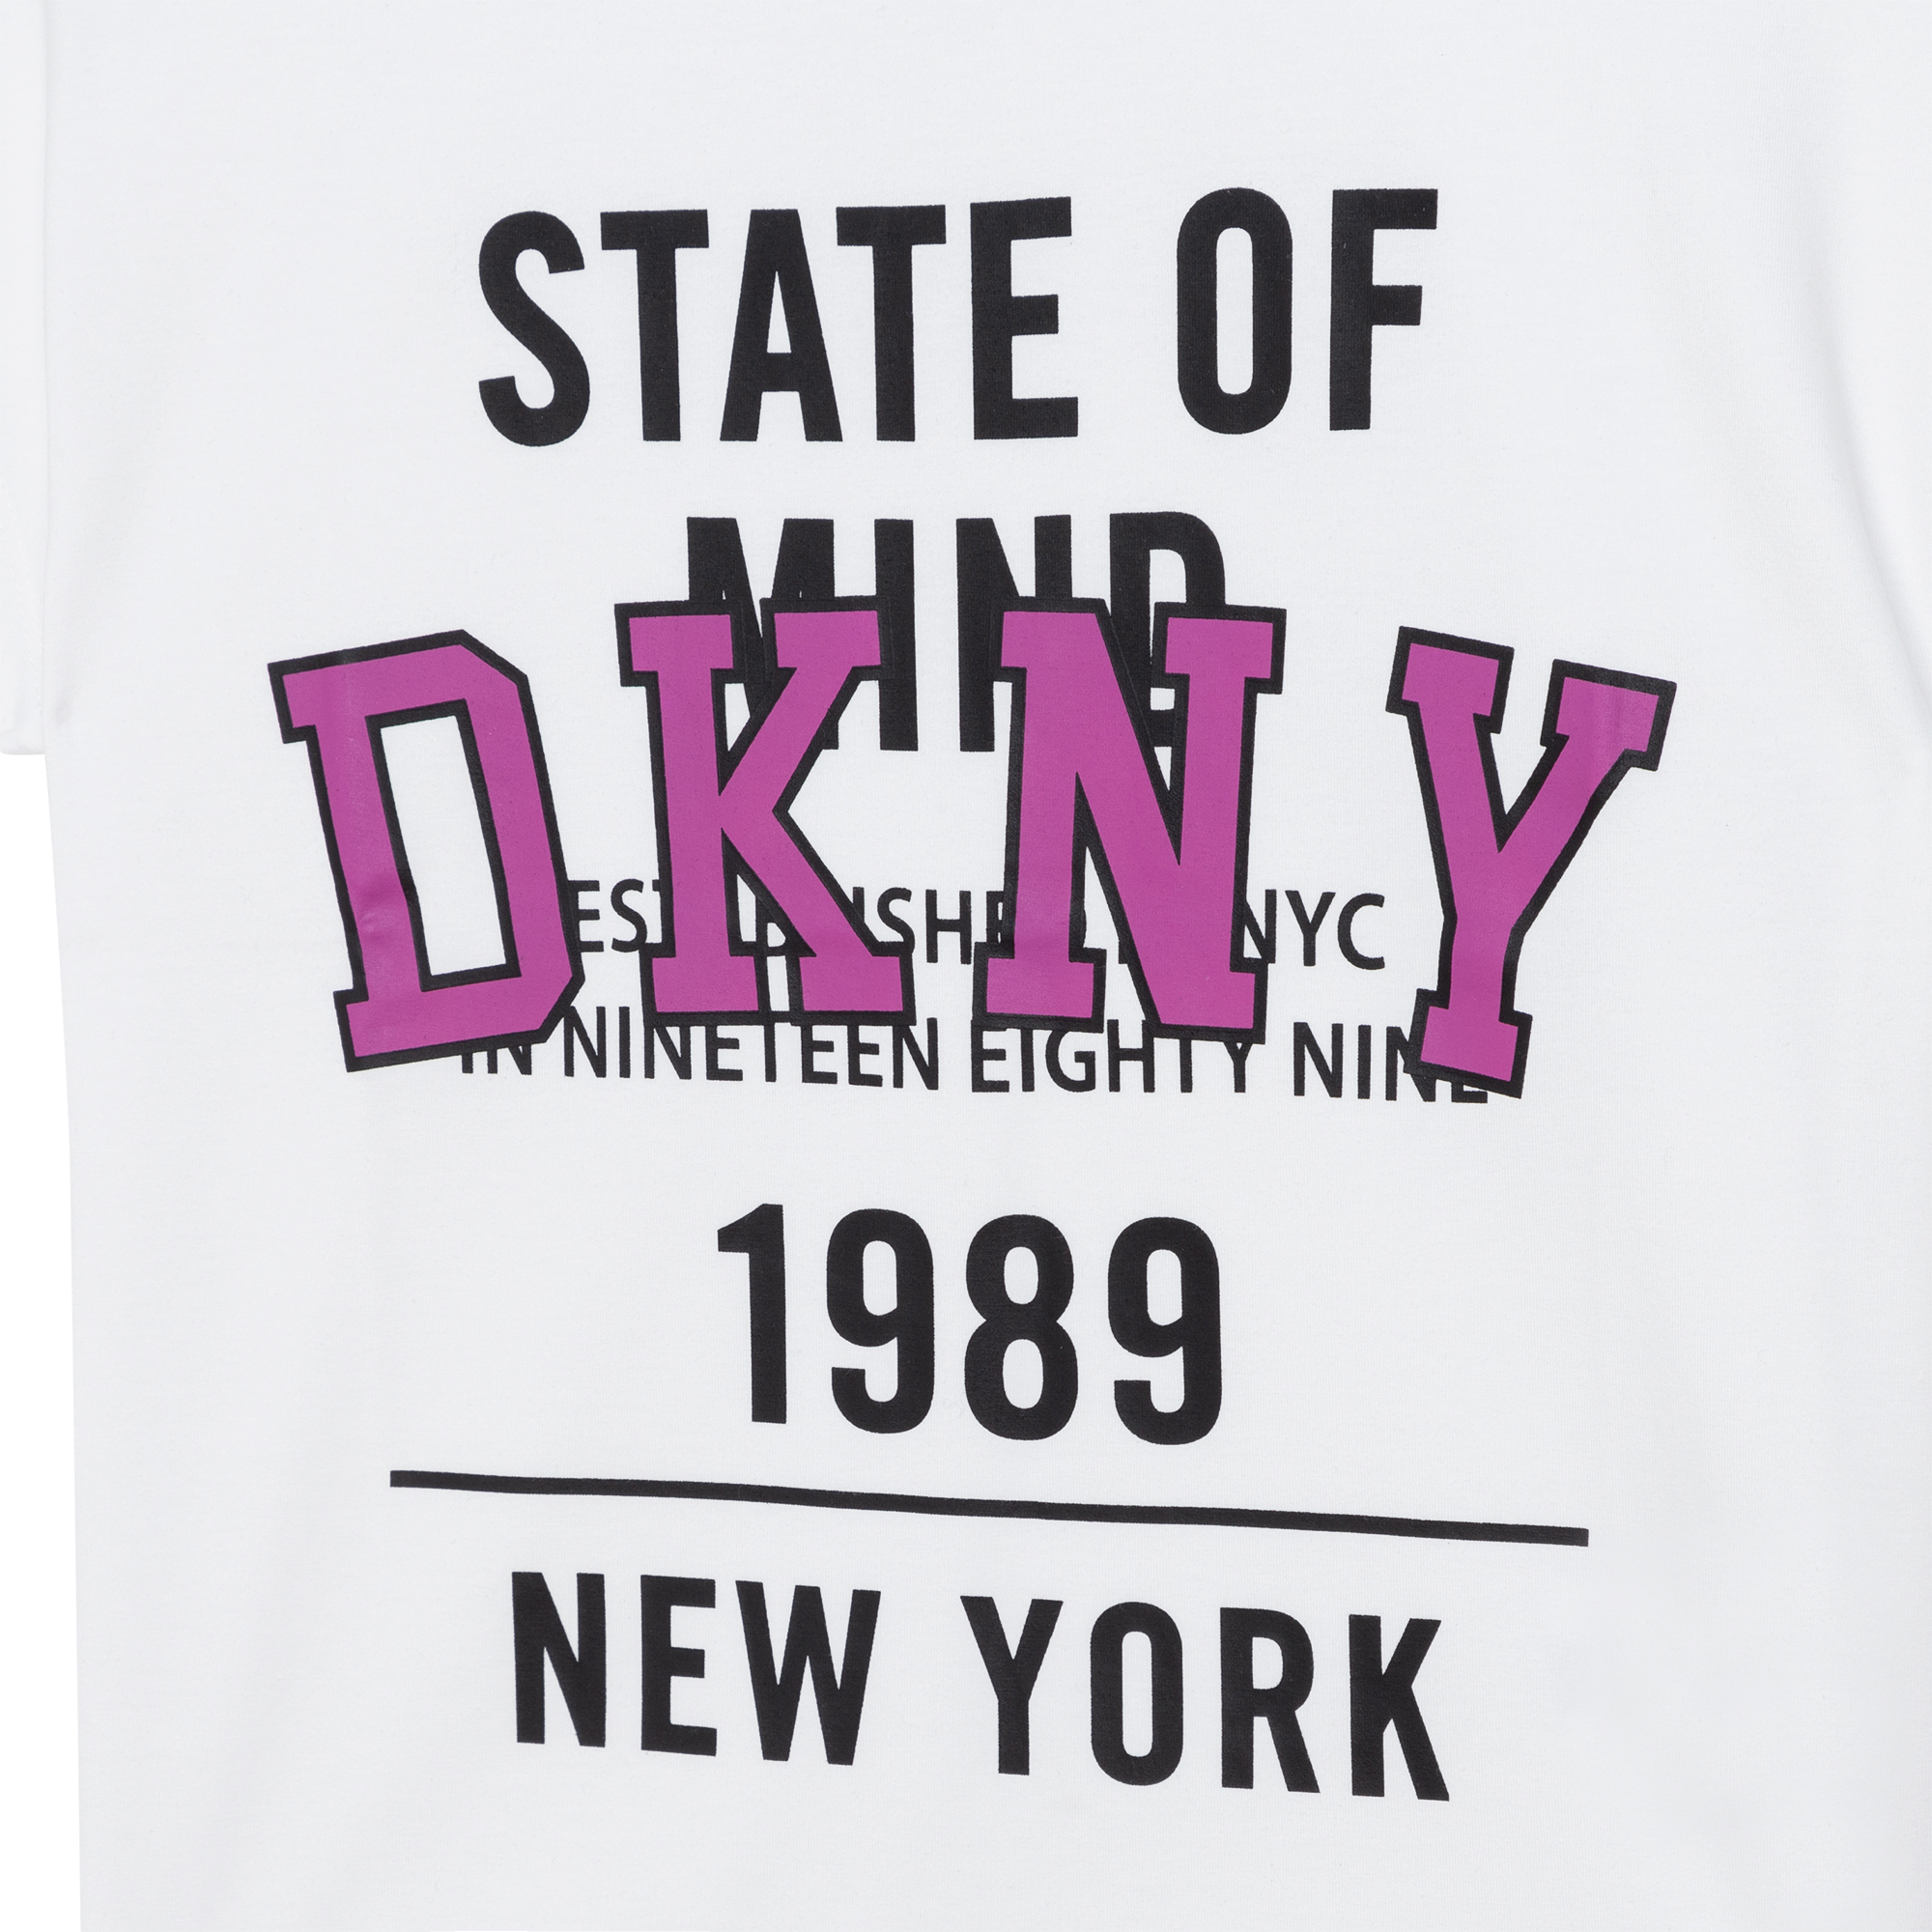 Kurzarm-Shirt DKNY Für MÄDCHEN